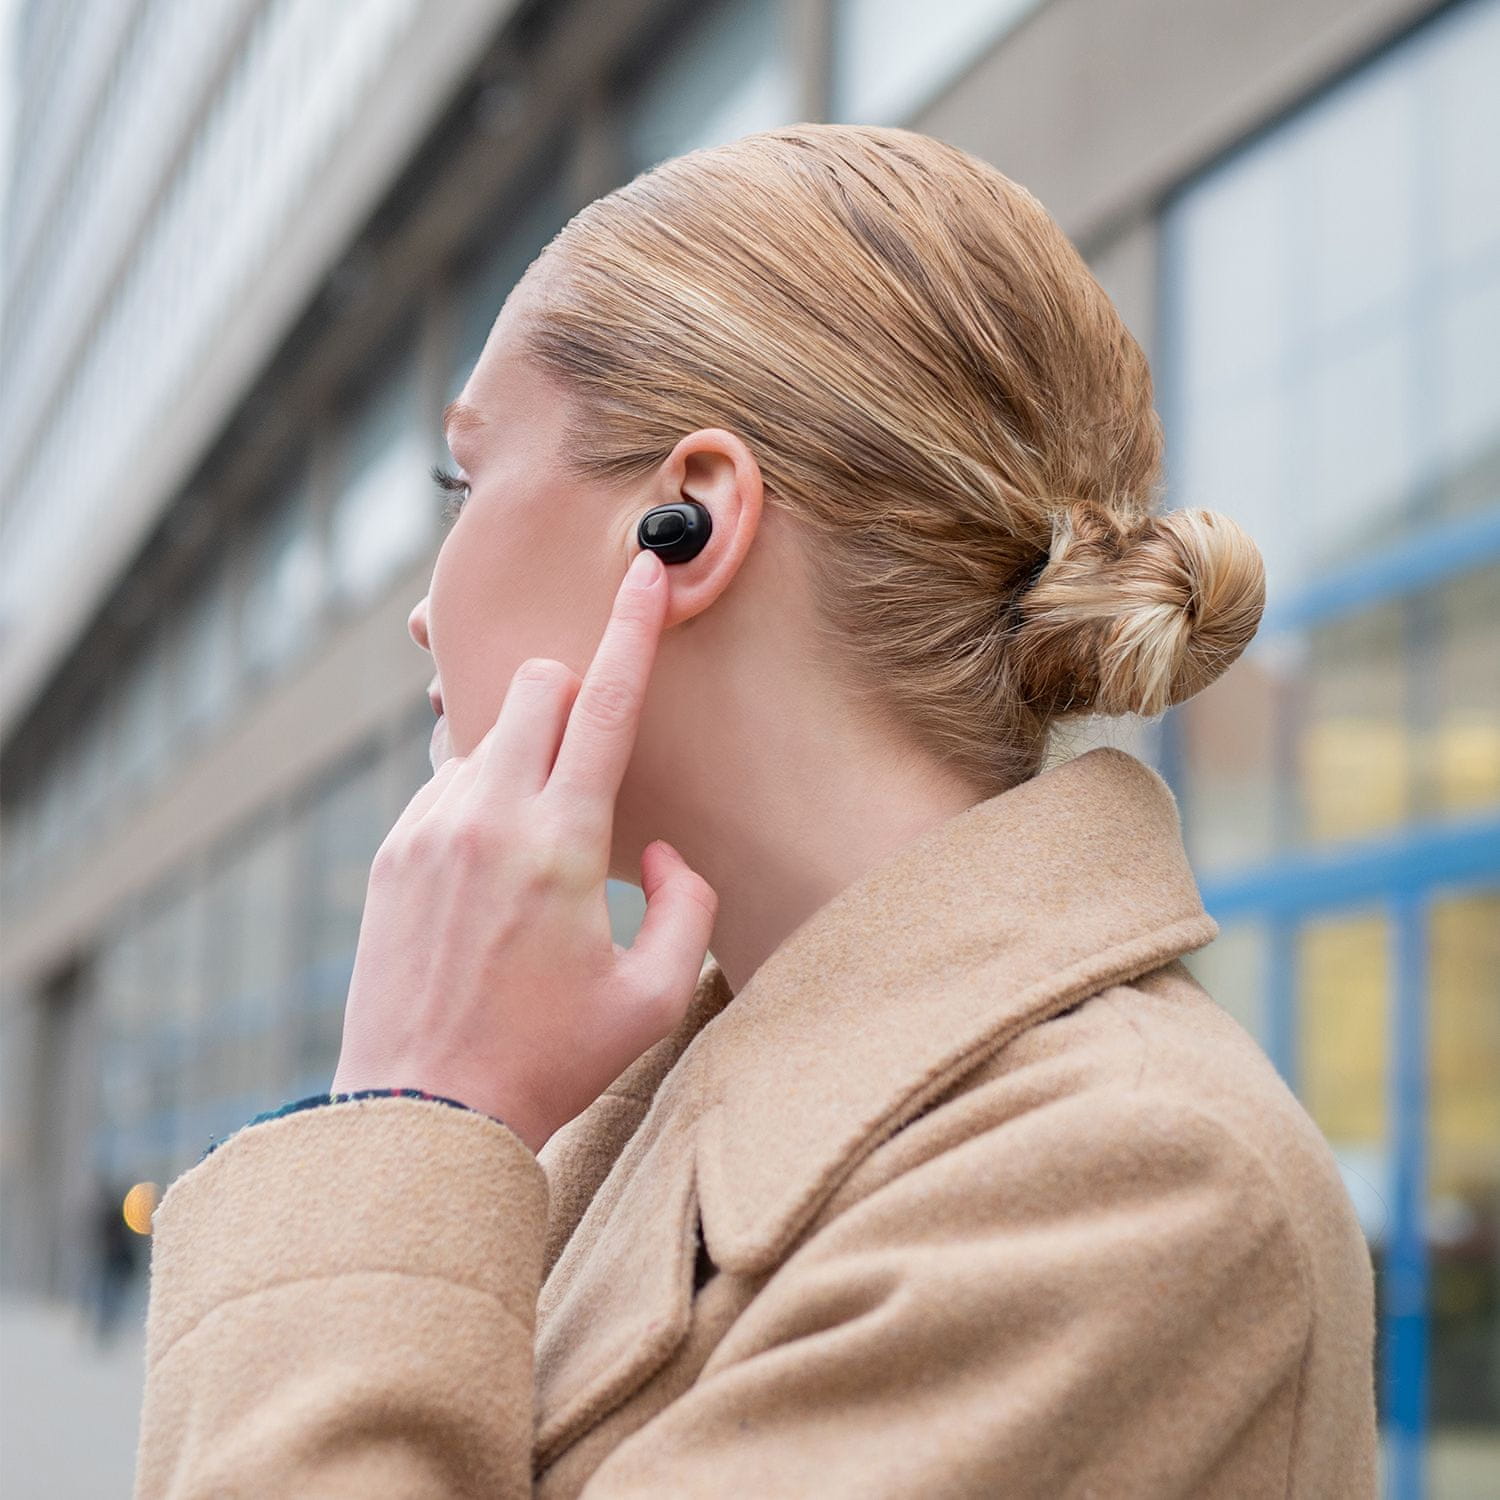 přenosná bezdrátová sluchátka niceboy hive podsie 2021 aac sbc maxxbass 8mm měniče až 35h provoz díky nabíjecímu boxu pohodlná v uších smart buttons ovládání mikrofon s redukcí okolního šumu provoz na 9,5 h ip54 krytí autopárování